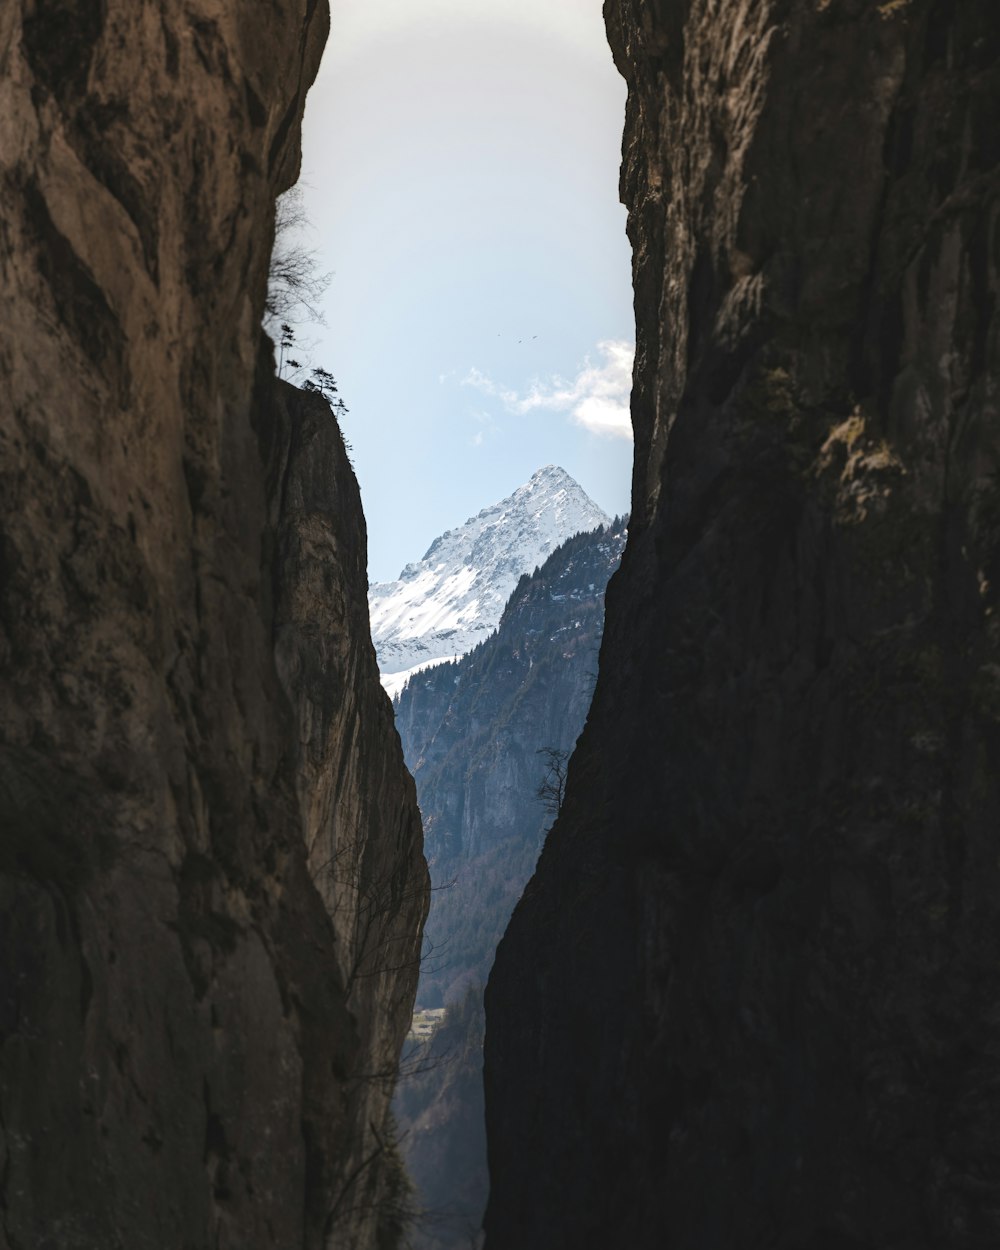 a view of a mountain through a narrow canyon